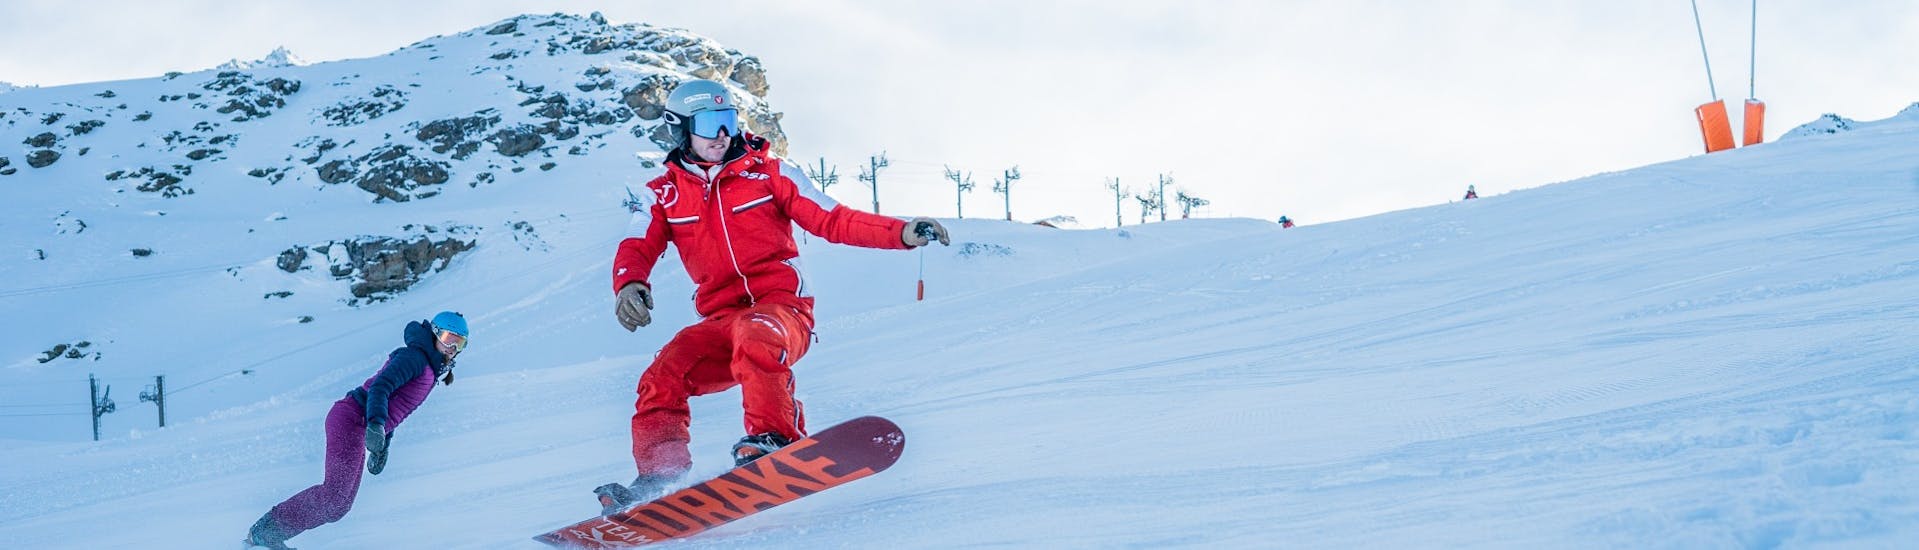 Een instructeur van de ESF Val Thorens laat enkele trucjes zien tijdens een privé snowboardles.